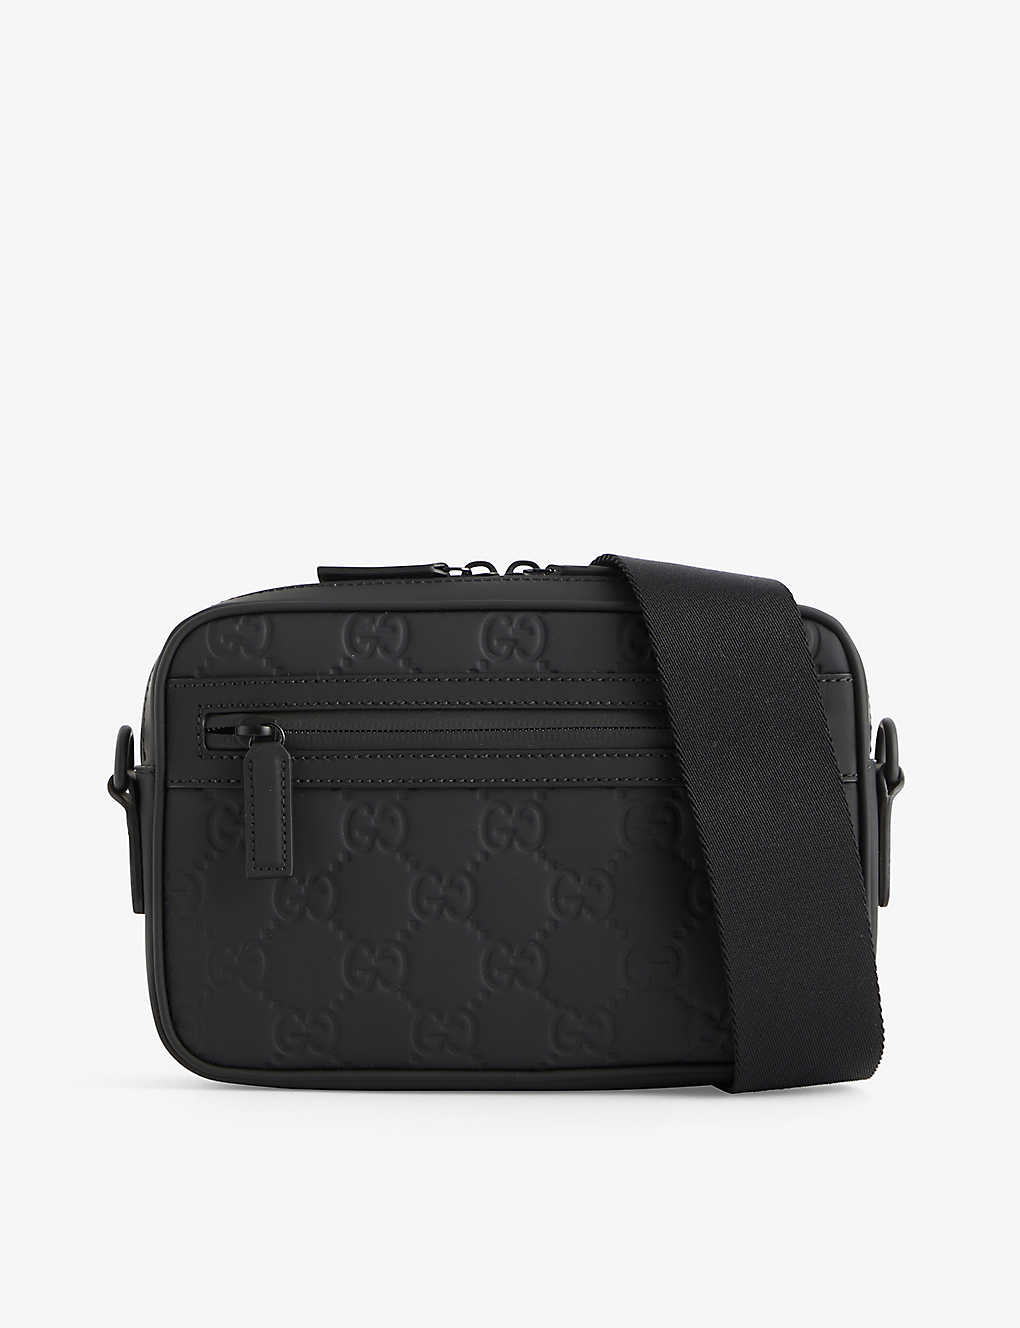 Gucci Monogram-debossed Leather Cross-body Bag In Black/black/black